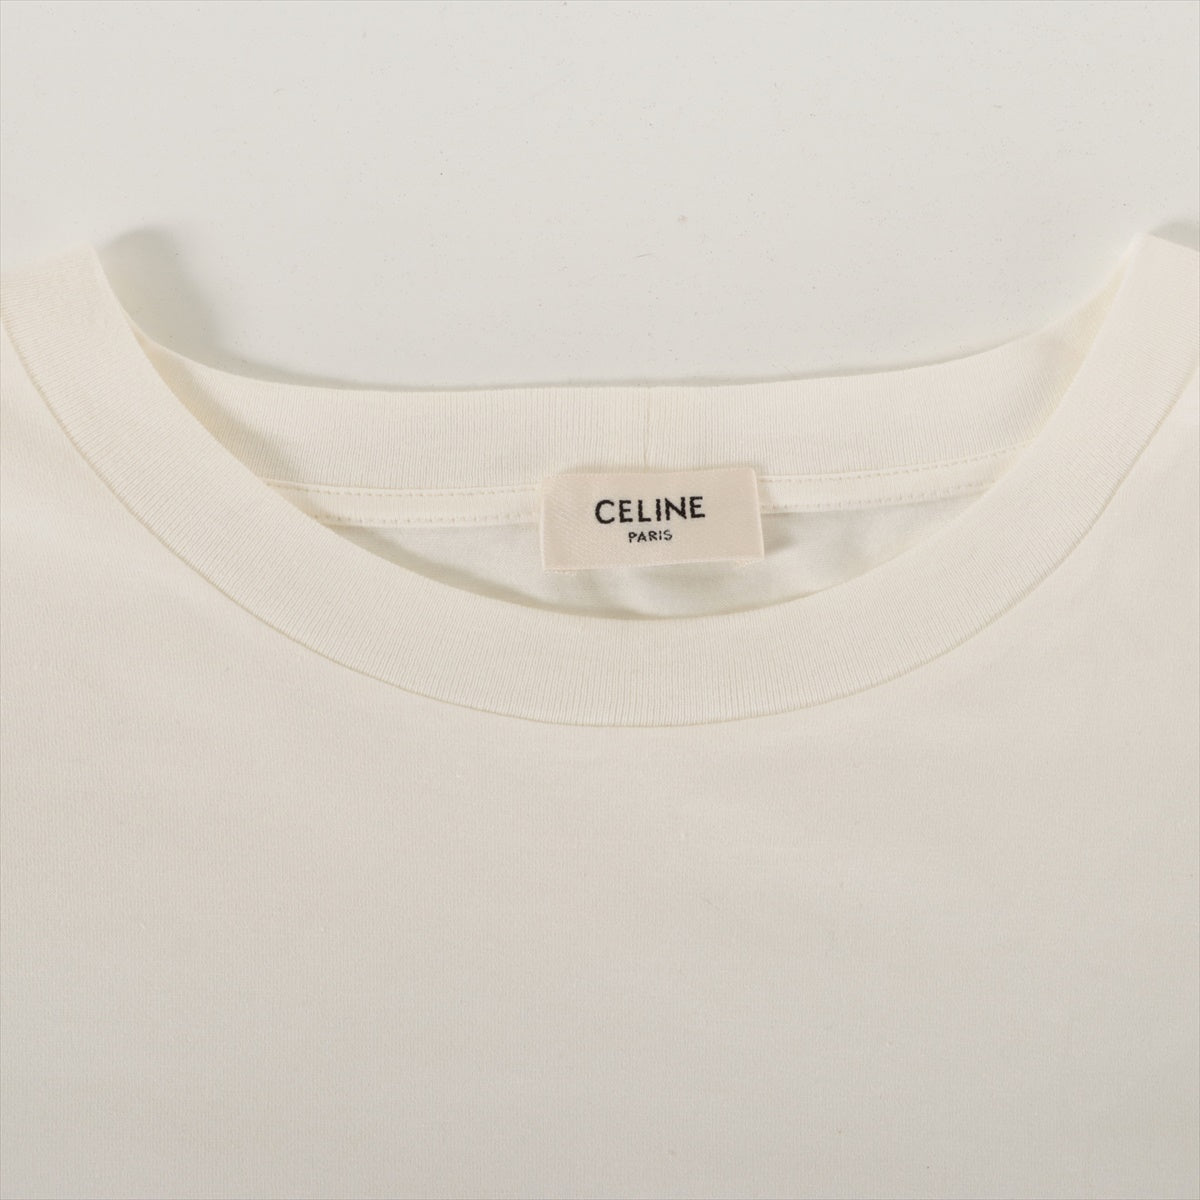 14,700円【正規品】CELINE Tシャツ レディース クロップド M